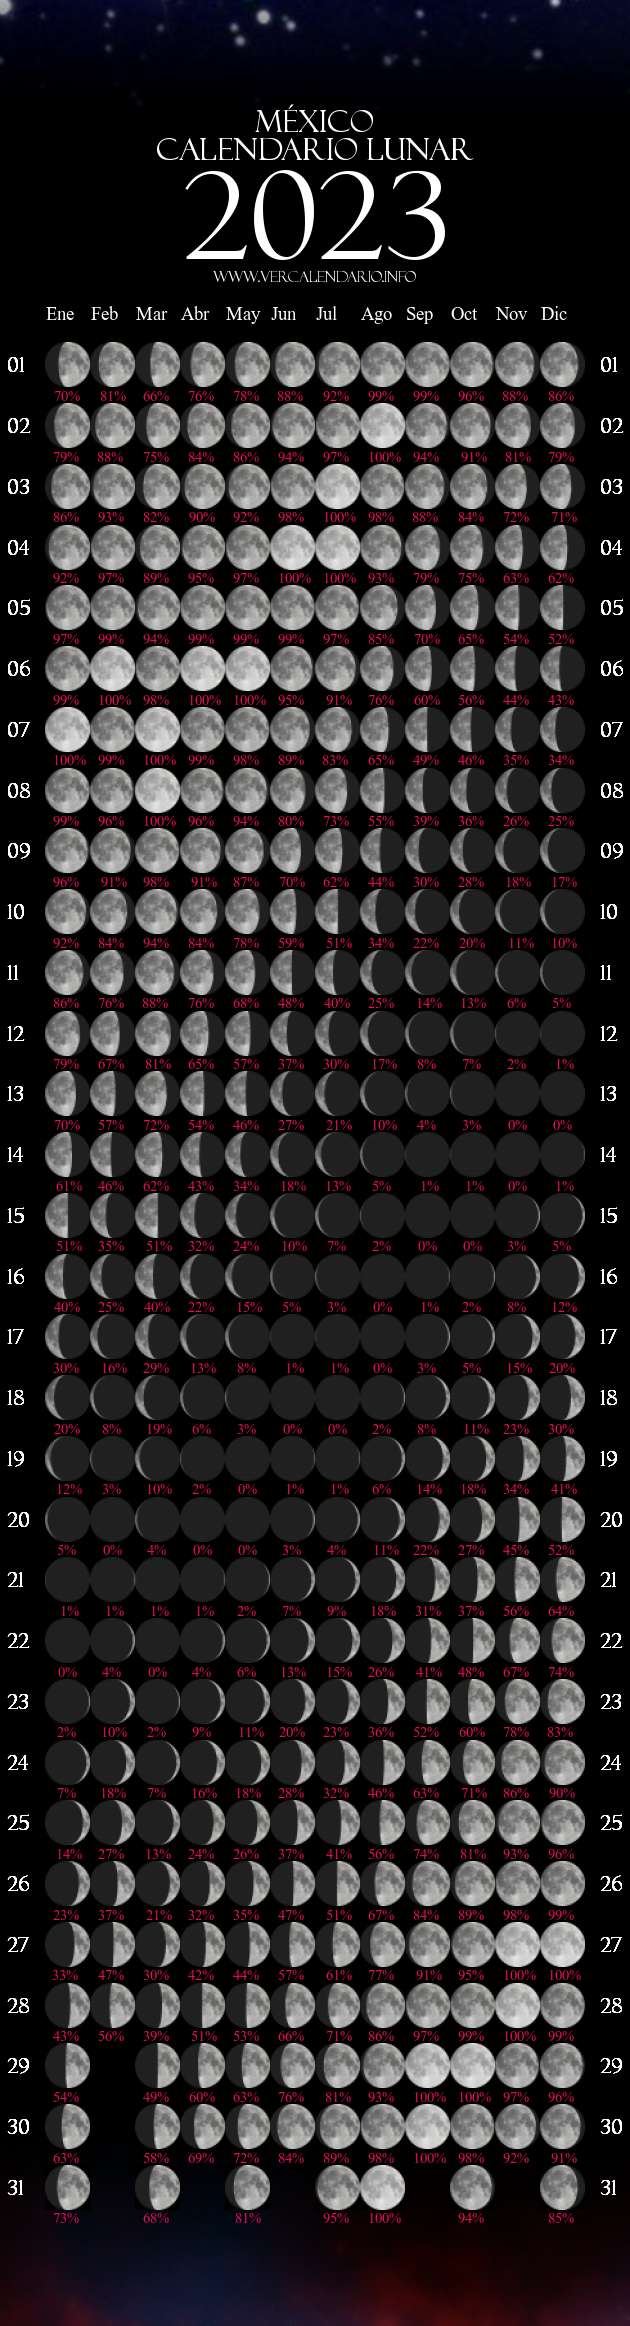 Calendario Lunar Febrero A O 2023 Fases Lunares Hemisferio IMAGESEE